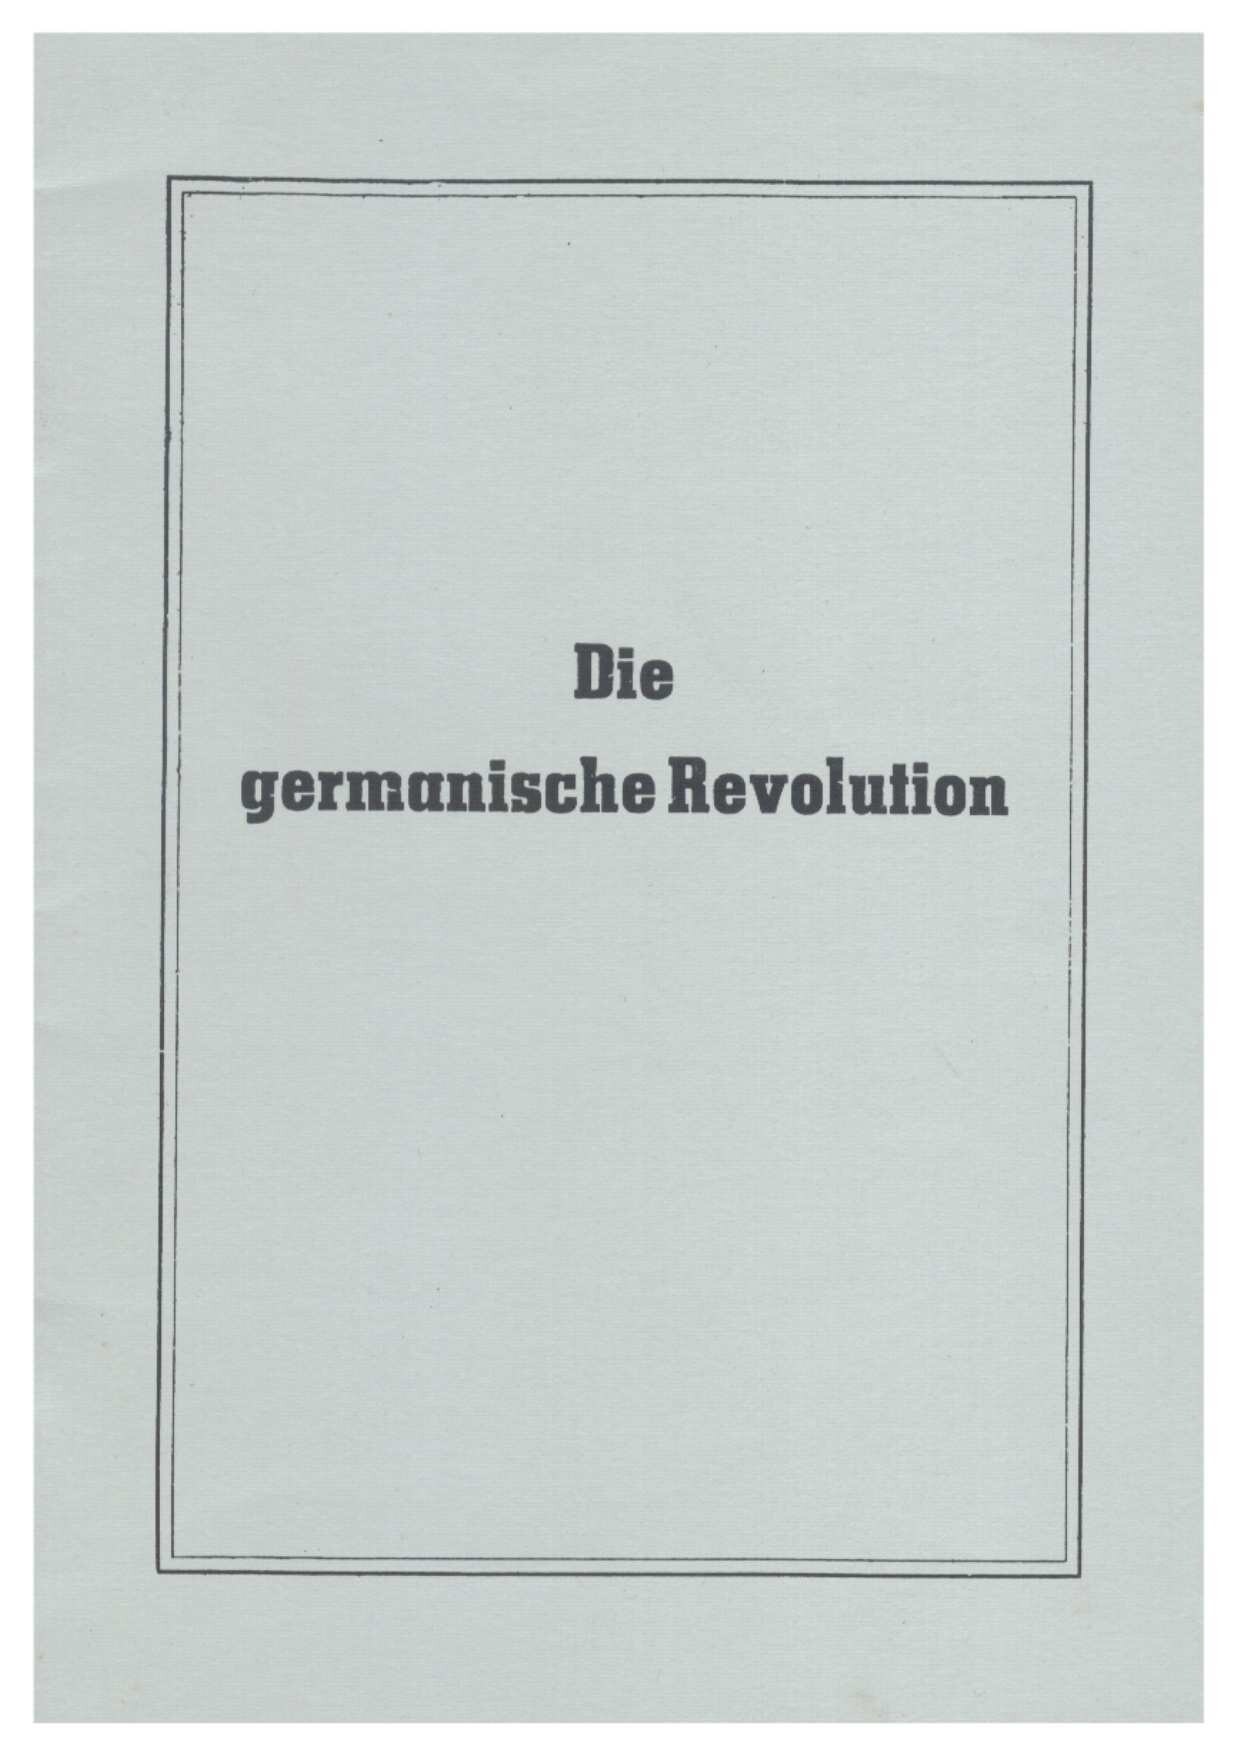 Die germanische Revolution (32 S., Scan)